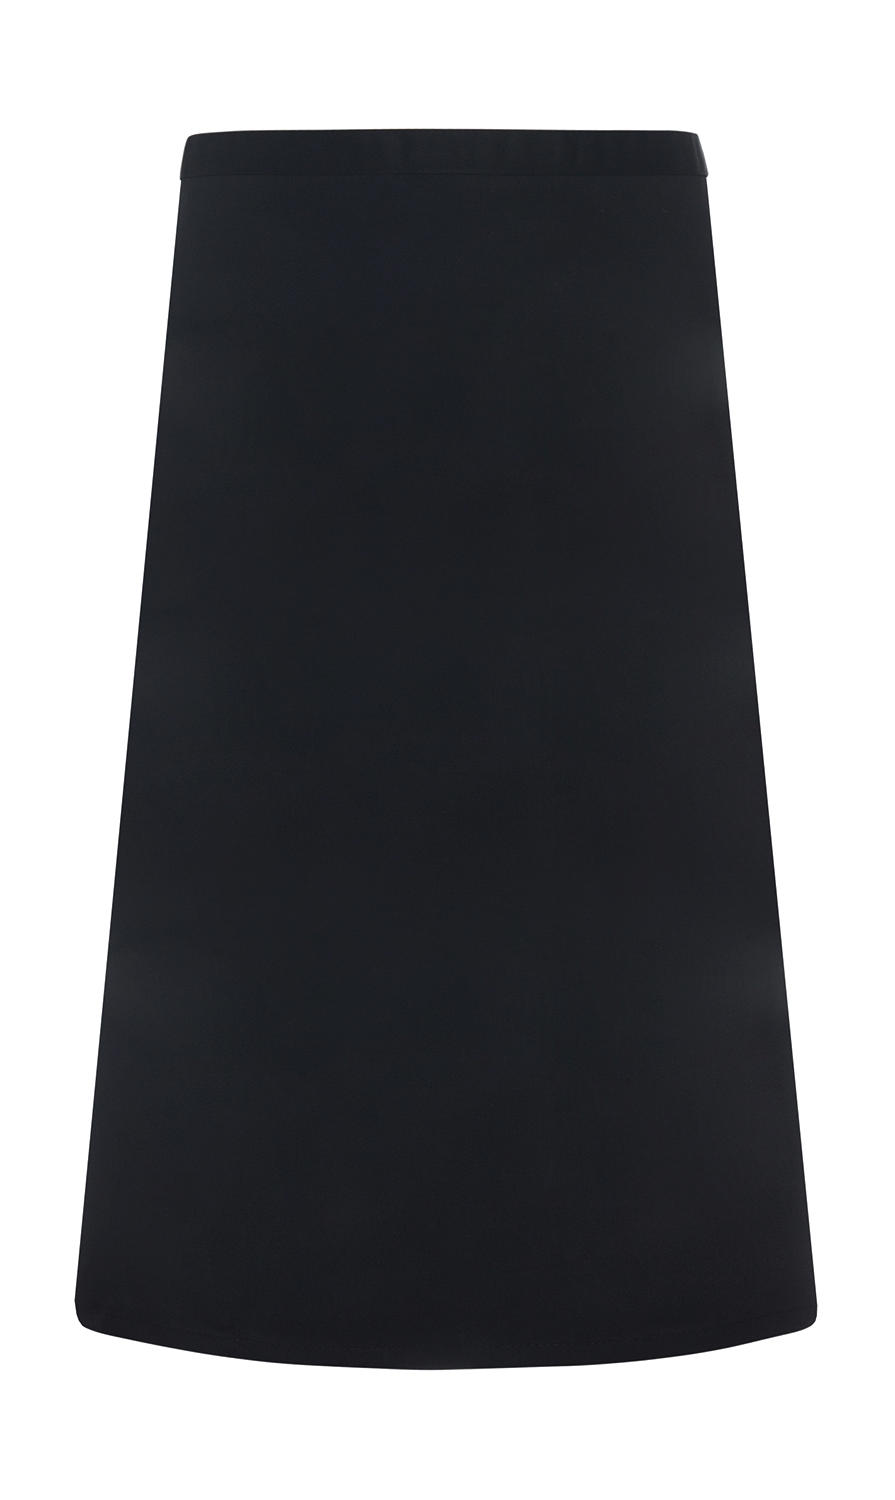  Basic Bistro Apron in Farbe Black